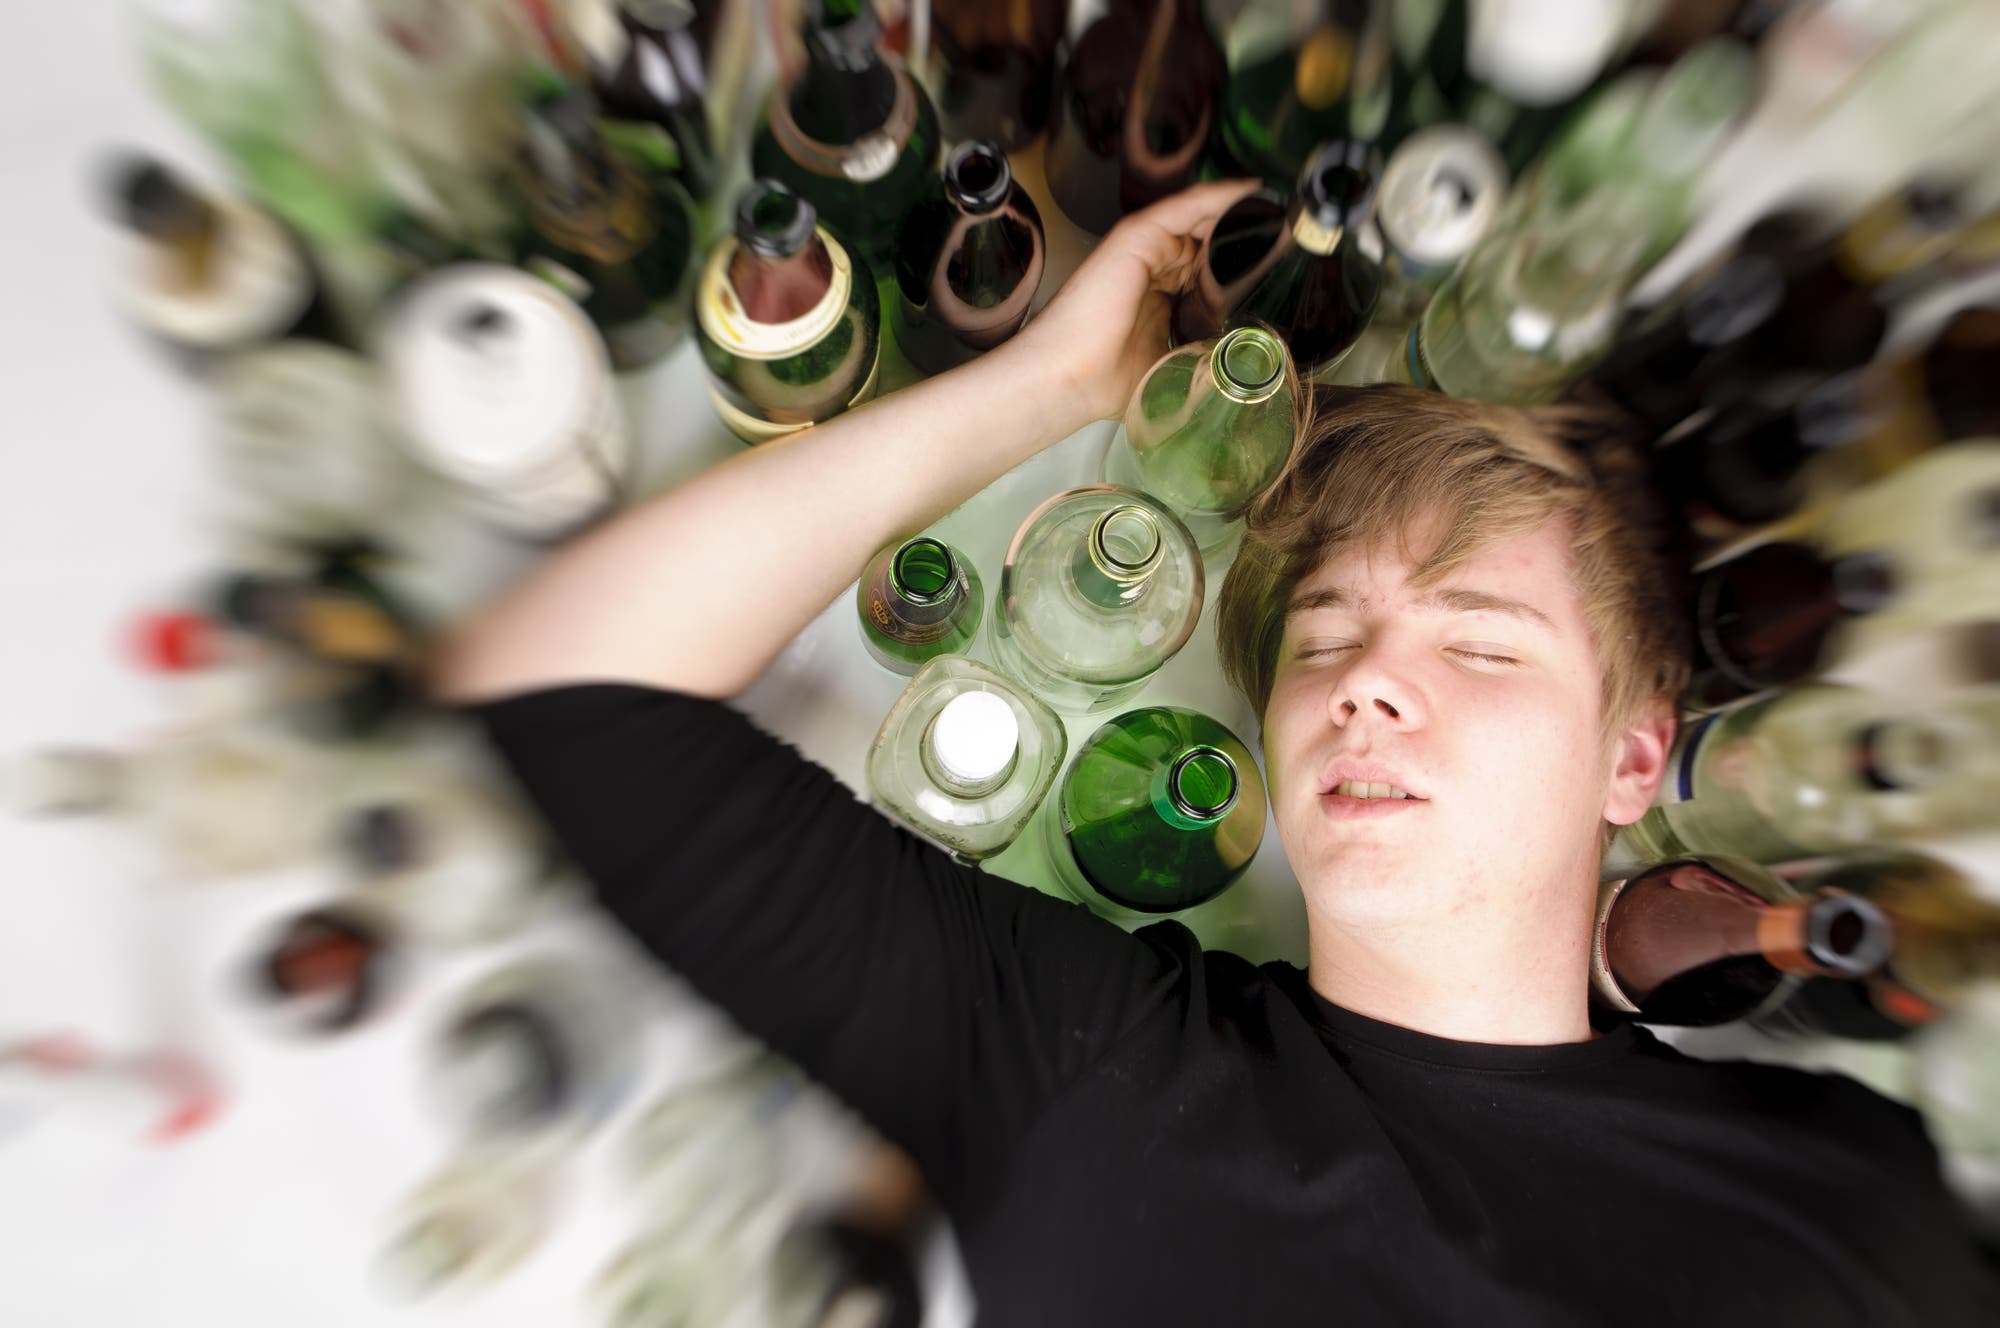 Ein männlicher Jugendlicher liegt im Rausch schlafend neben vielen leeren Flaschen auf dem Boden.